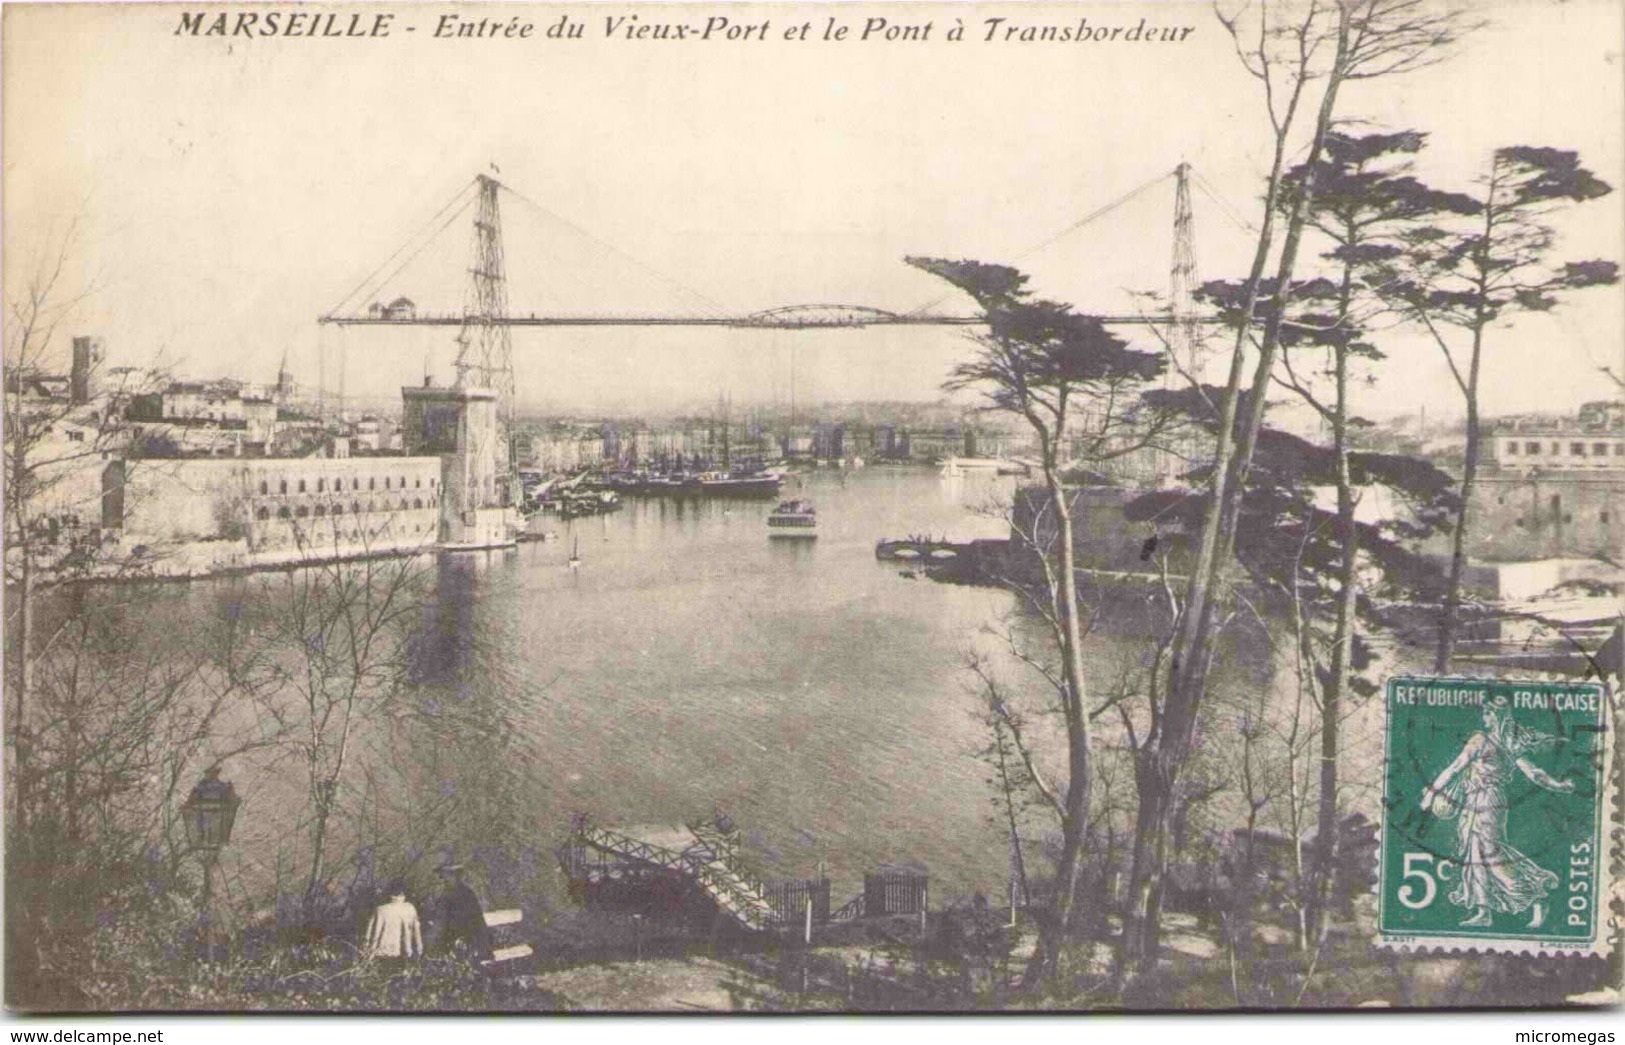 13 - MARSEILLE - Entrée Du Vieux-Port Et Le Pont à Transbordeur - Vieux Port, Saint Victor, Le Panier